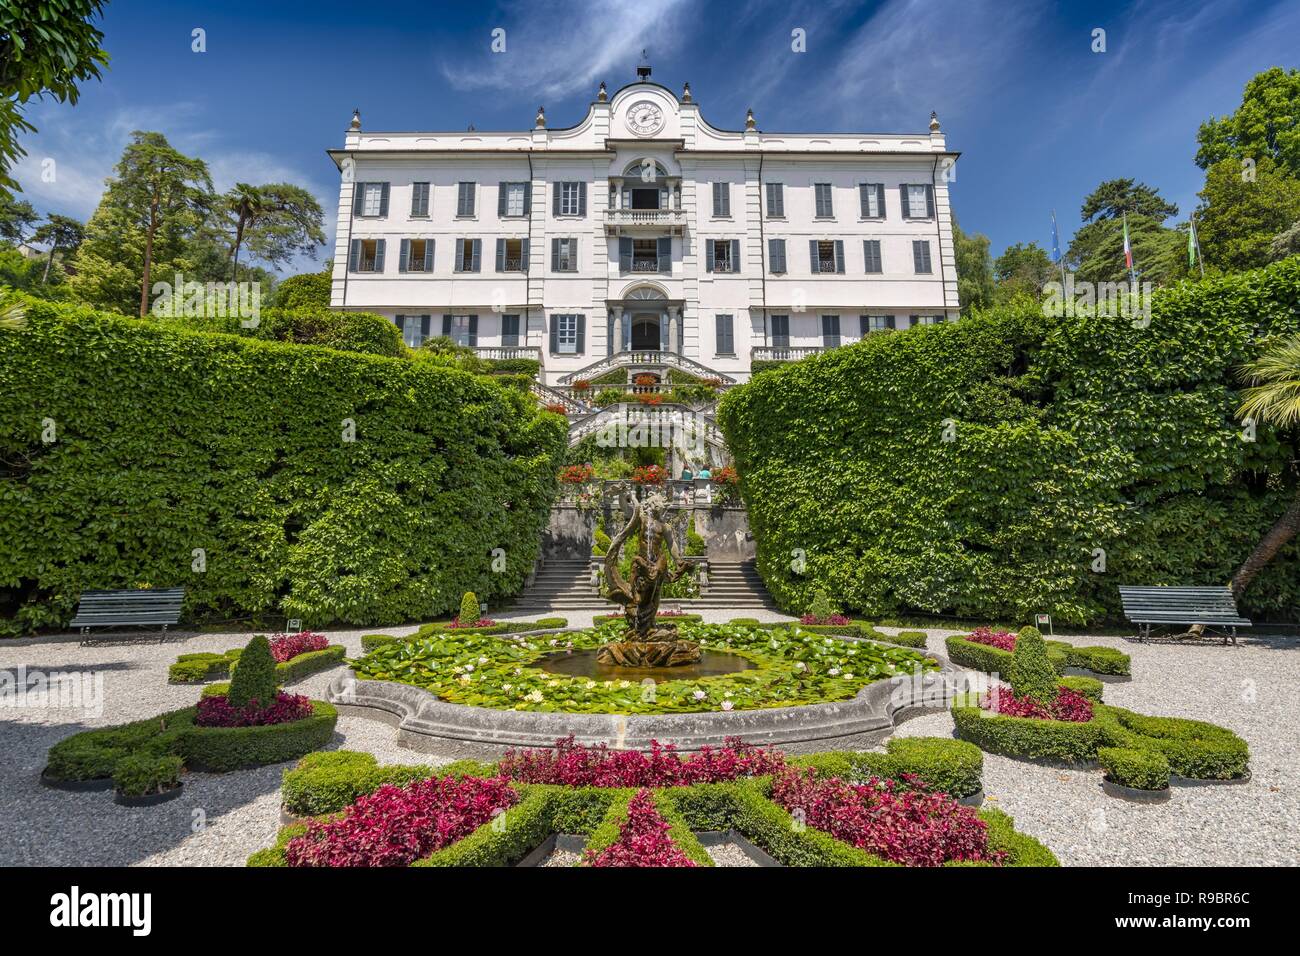 Villa Carlotta and gardens in Tremezzo, Lake Como, Lombardy, Northern Italy. Stock Photo